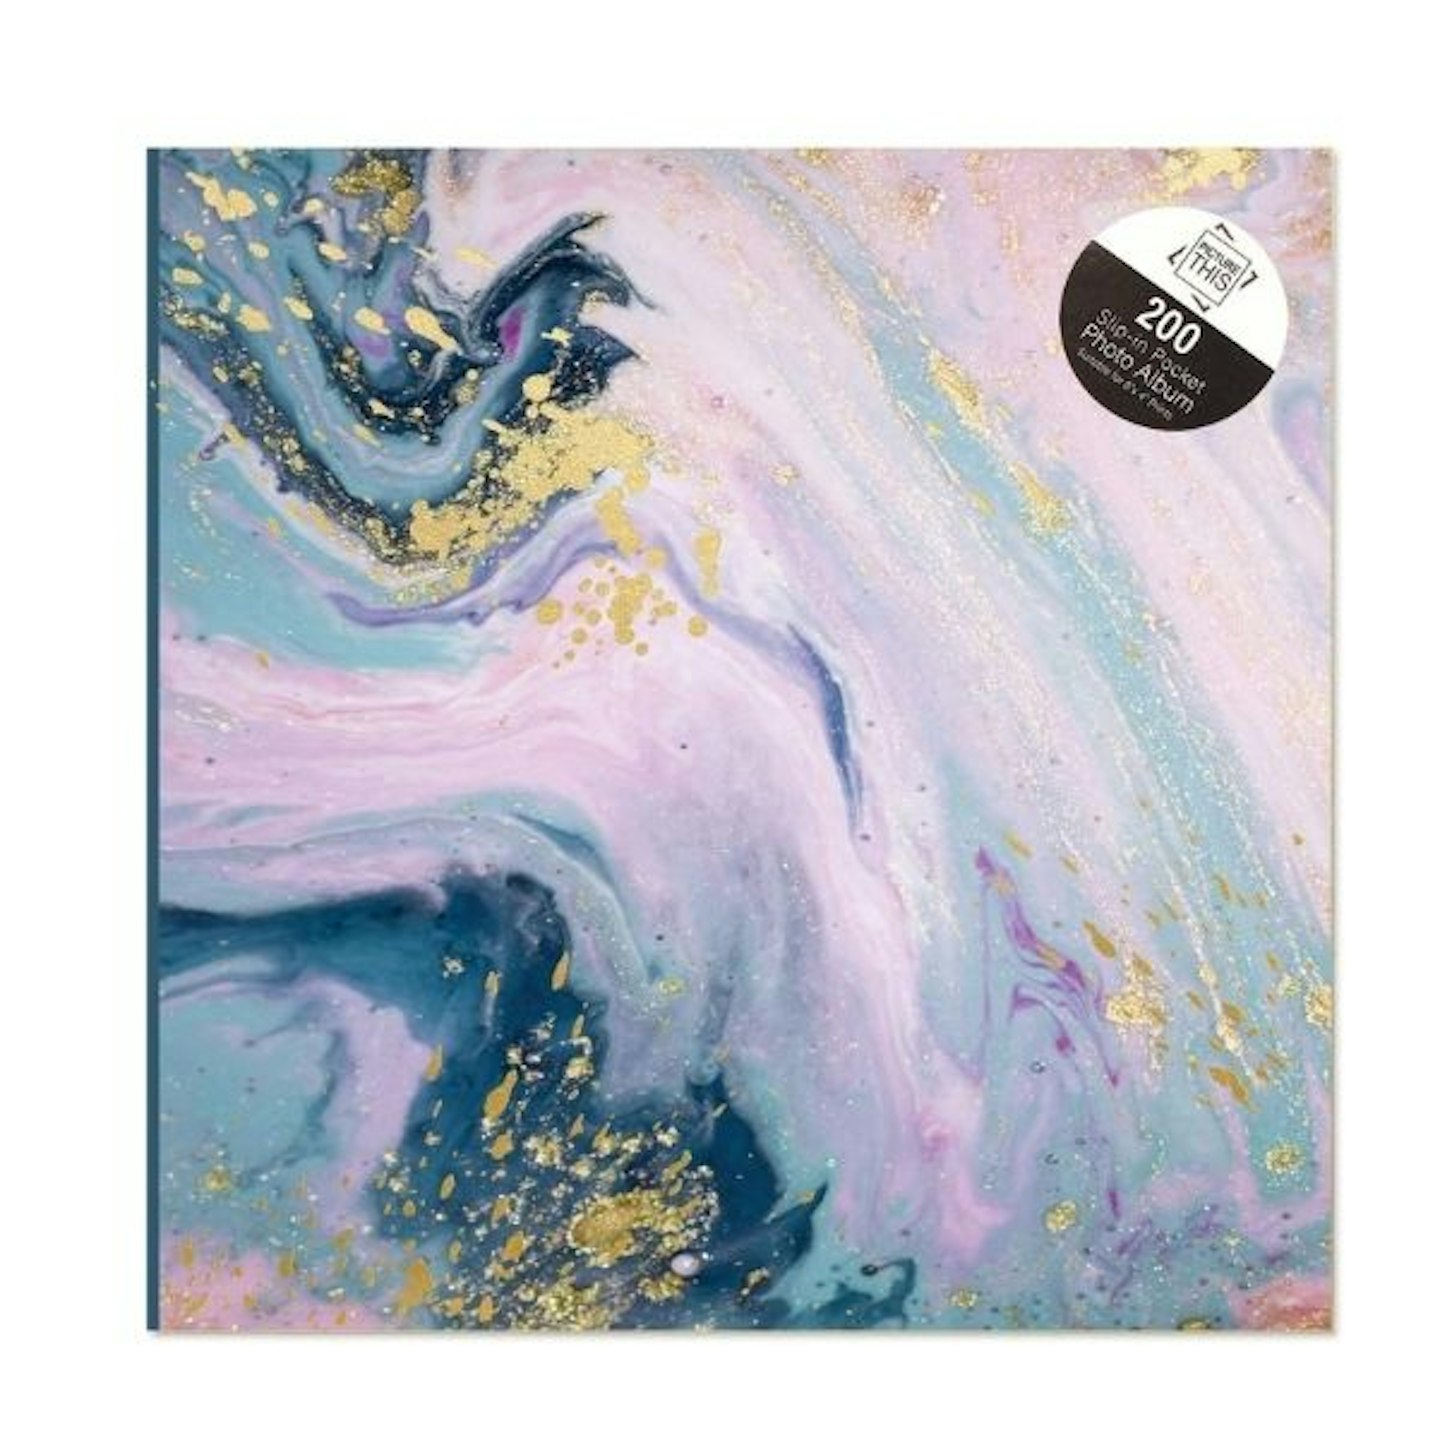 Tallon Abstract Marble Swirl Photo Album